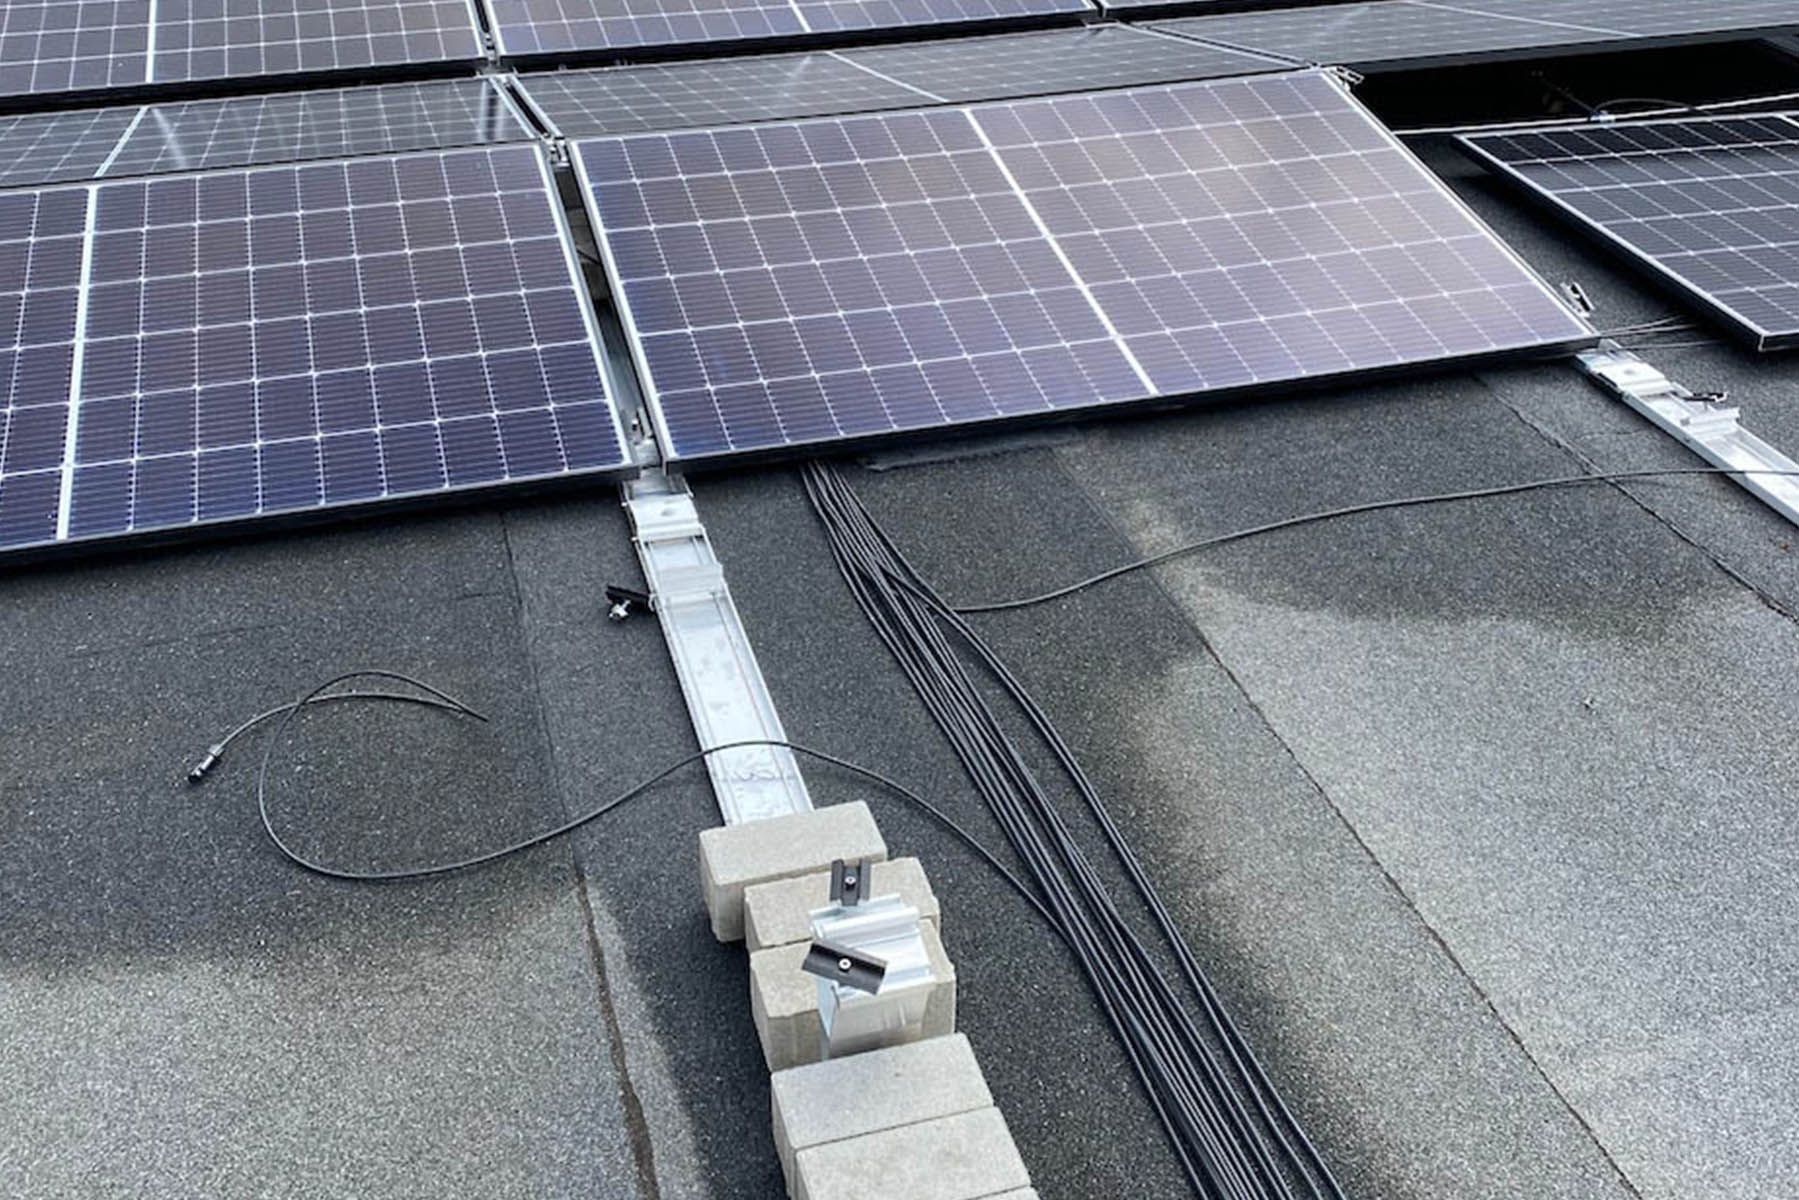 Photovoltaik-Anlage Aufbau KvG. Solarmodule werden auf dem Dach installiert.